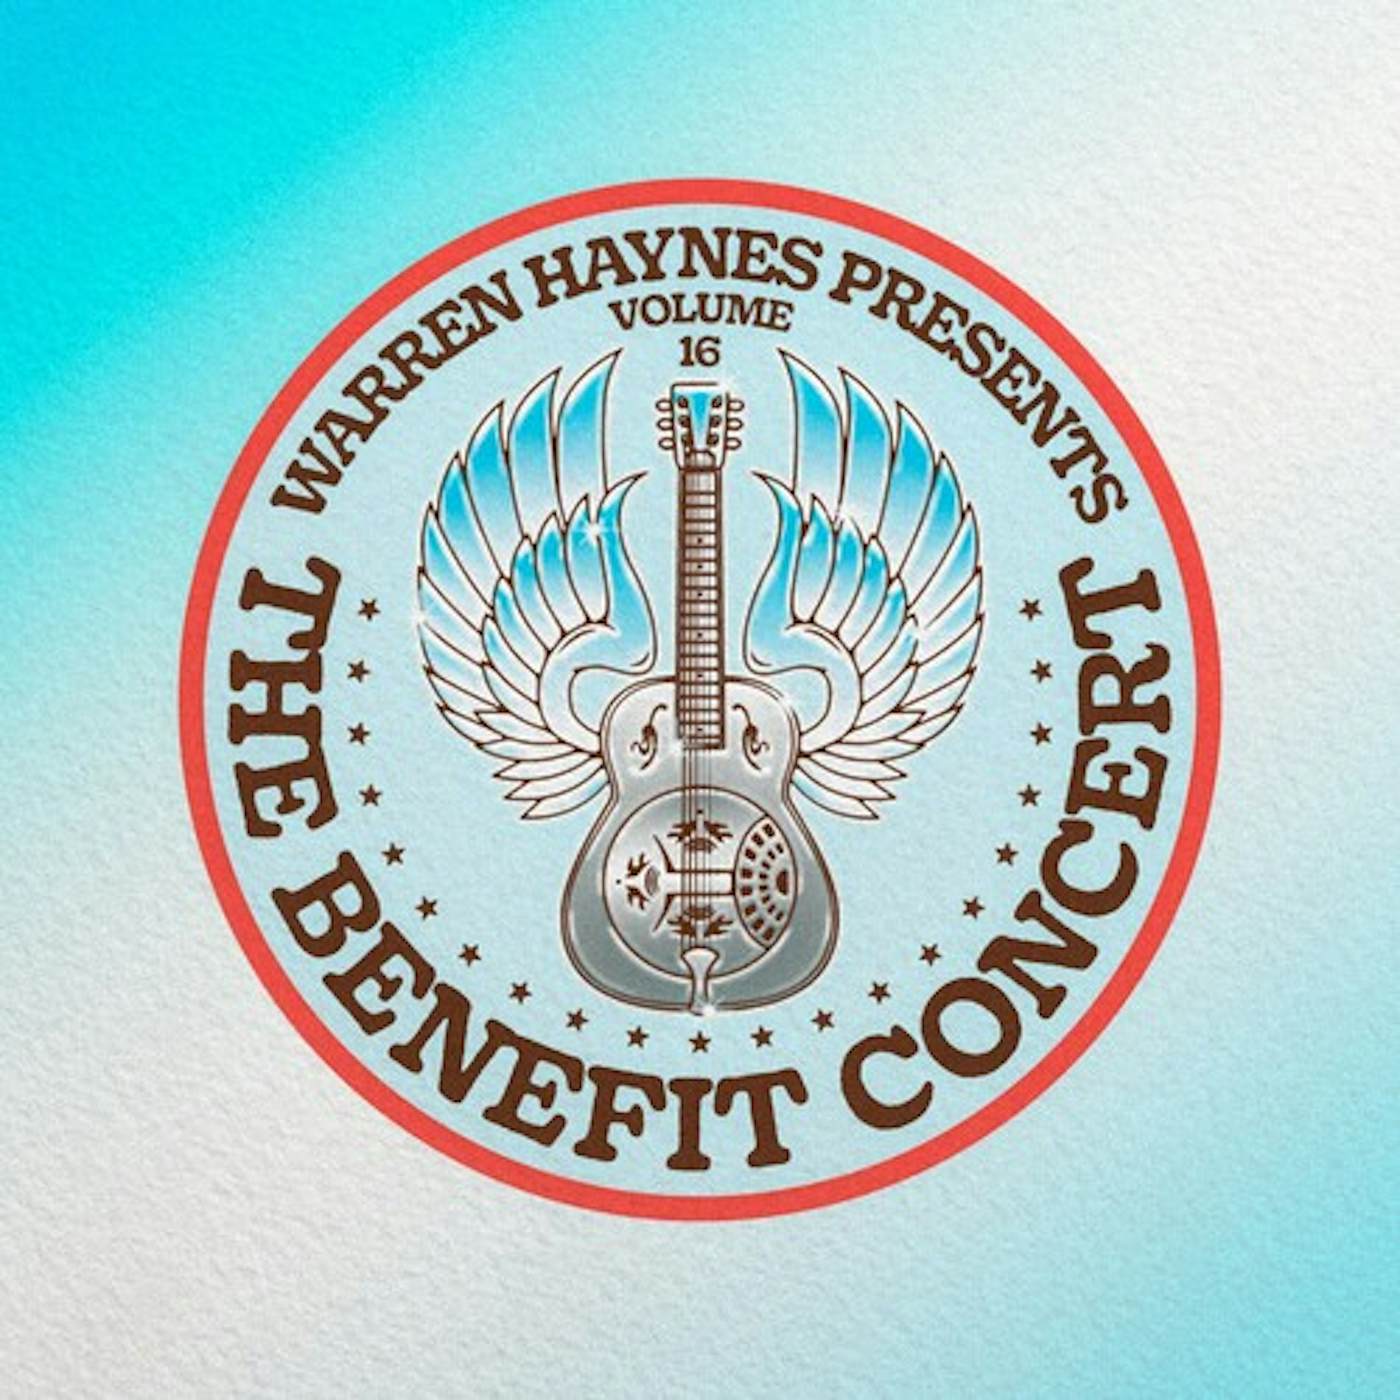 WARREN HAYNES PRESENTS THE BENEFIT CONCERT 16 Vinyl Record